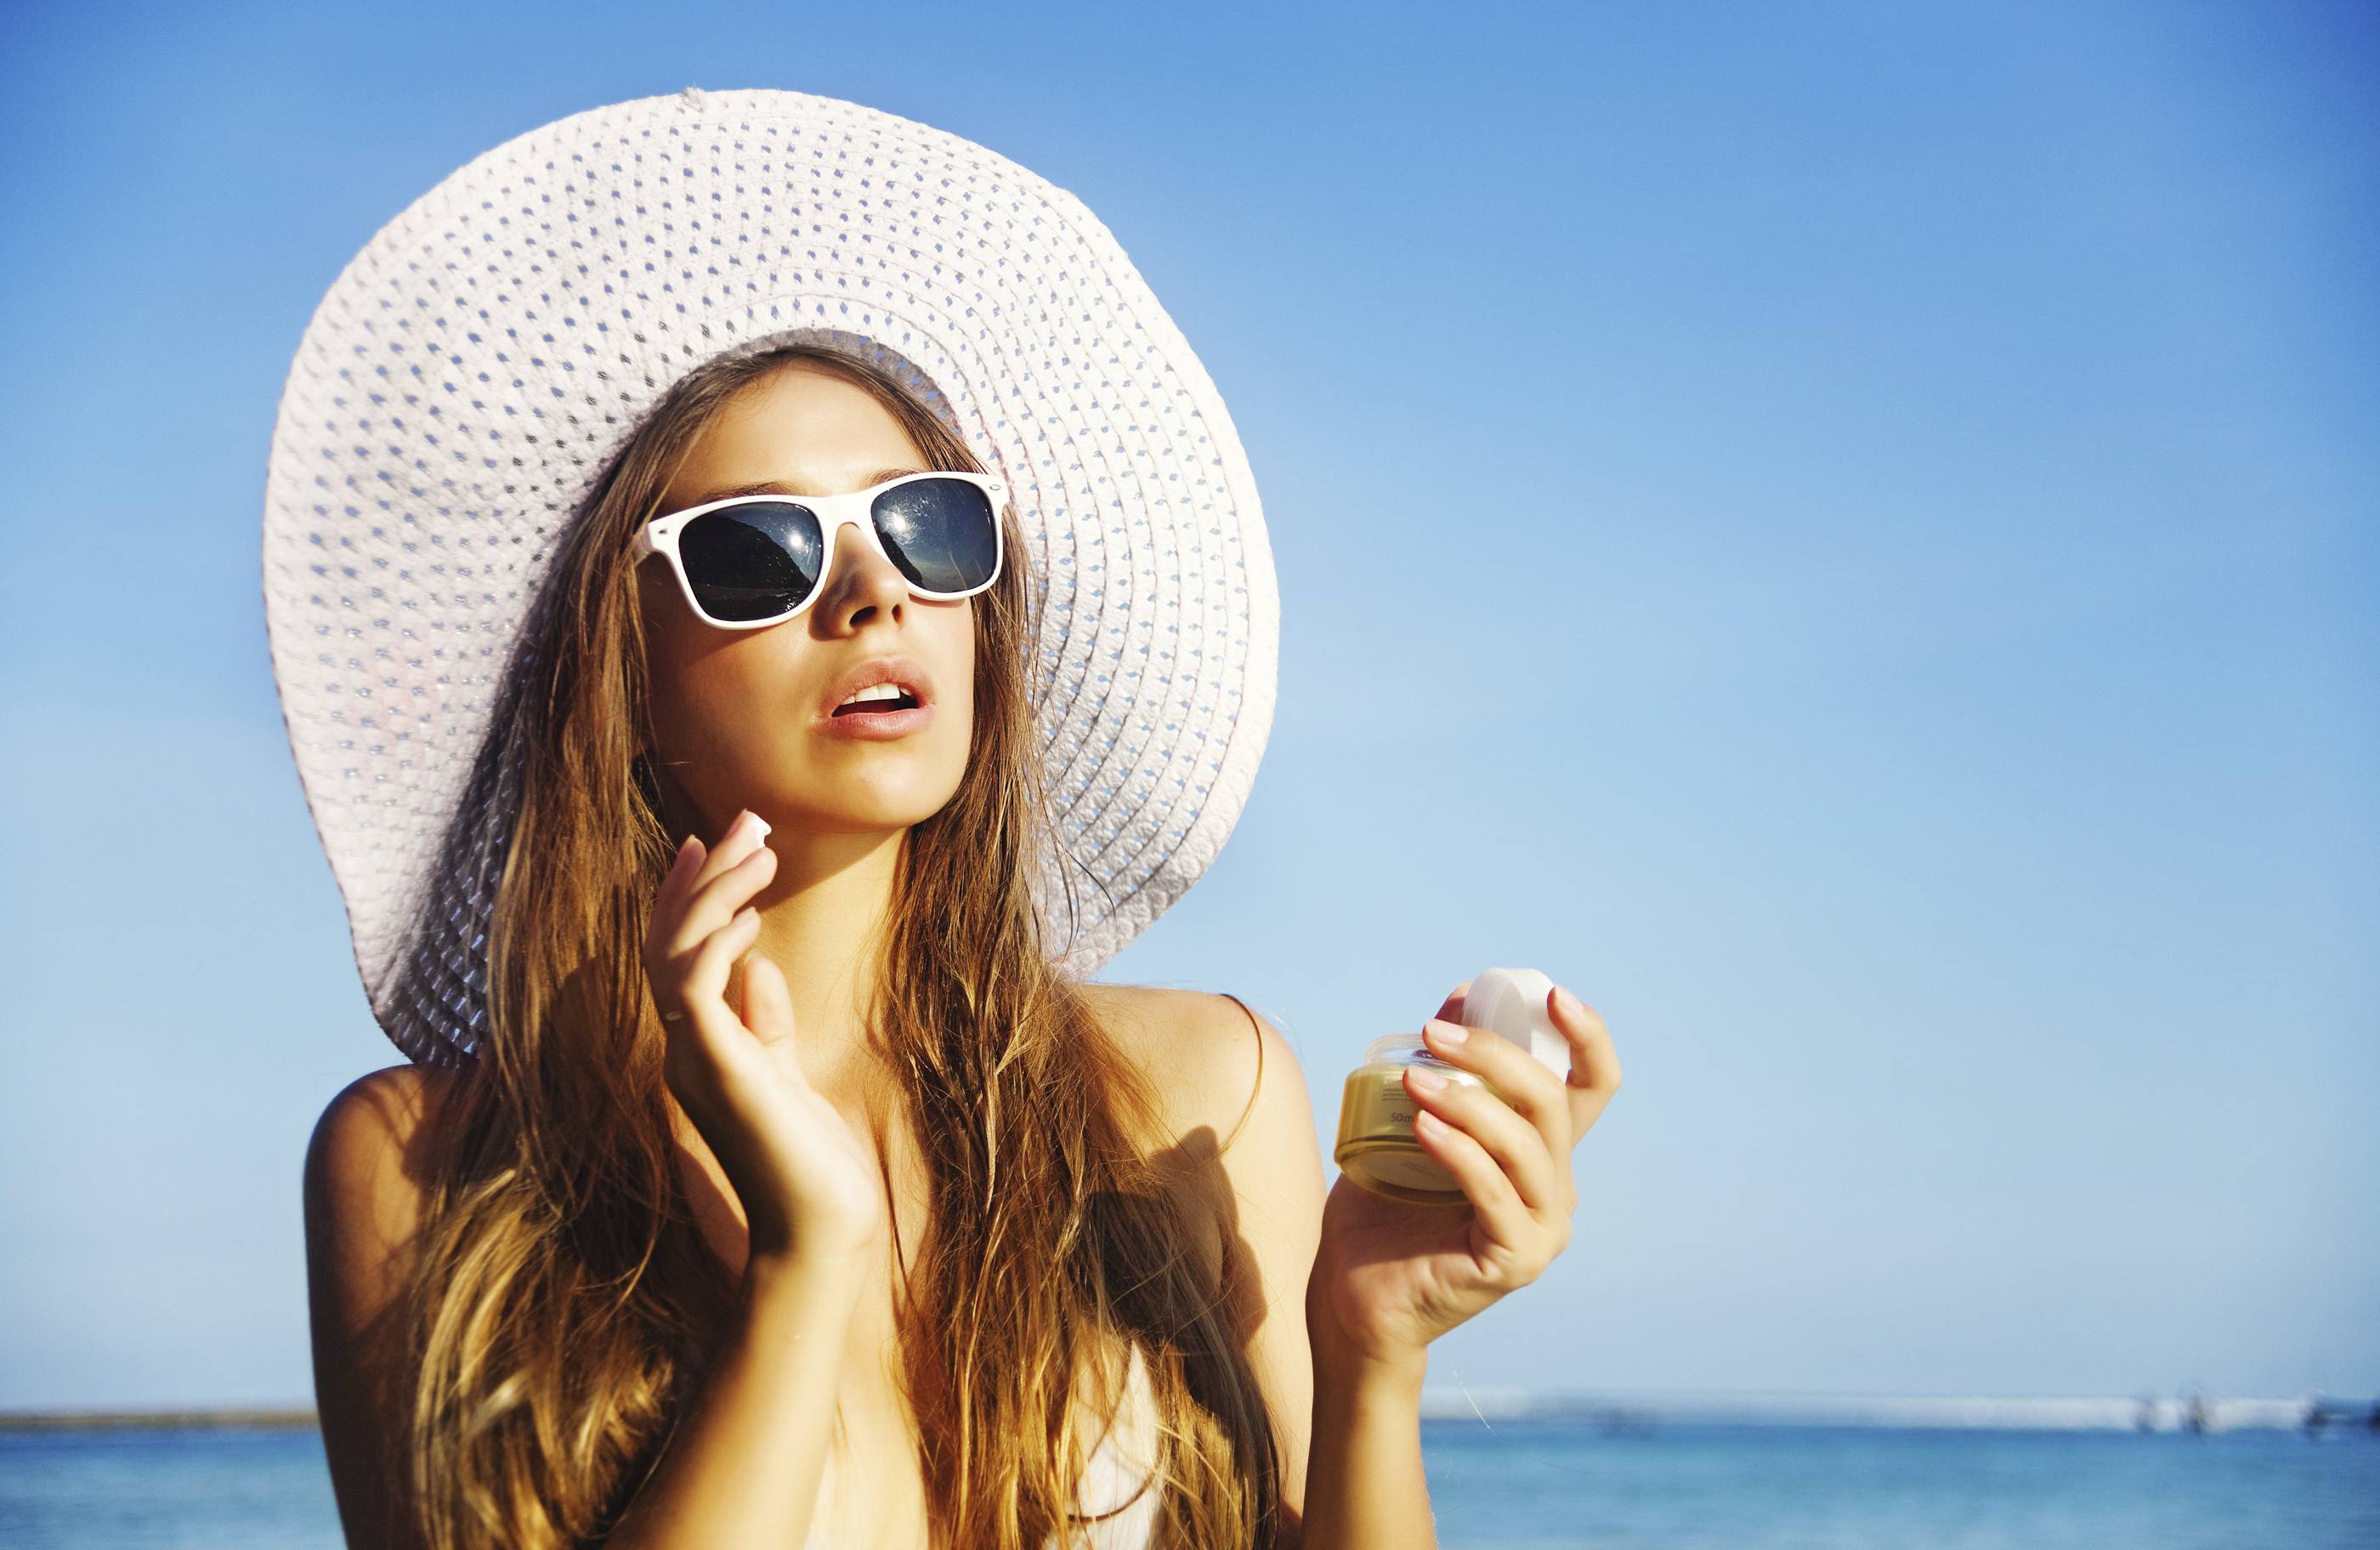 Nón rộng vành giúp che chắn gương mặt khi đi ngoài trời, giúp giảm tác động trực tiếp của tia UV lên mắt